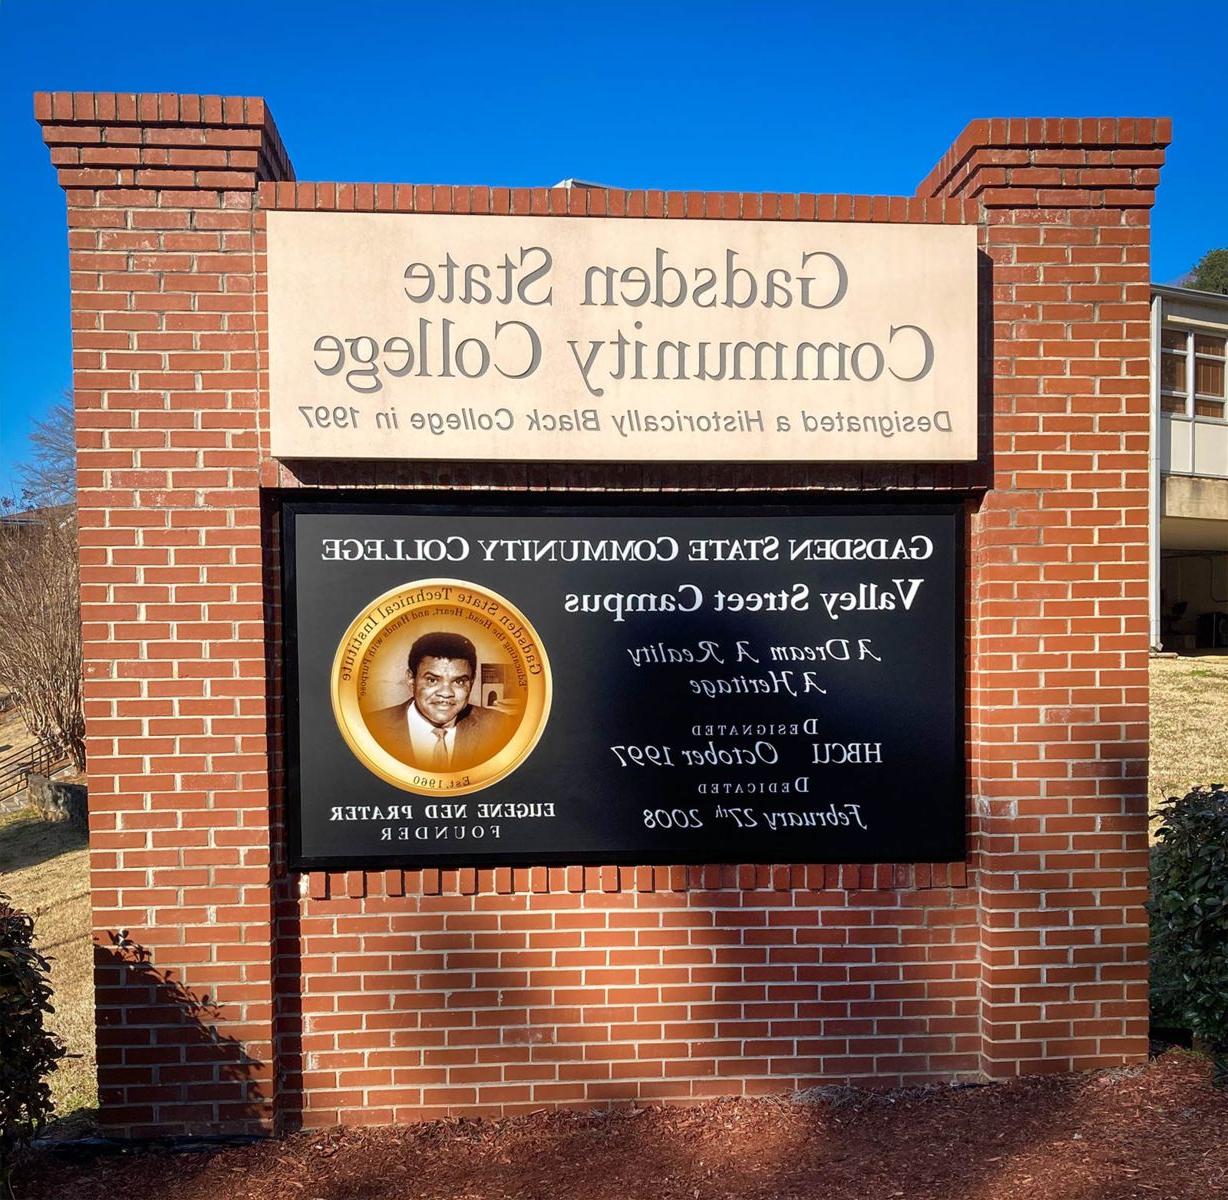 Gadsden State Valley Street Campus sign